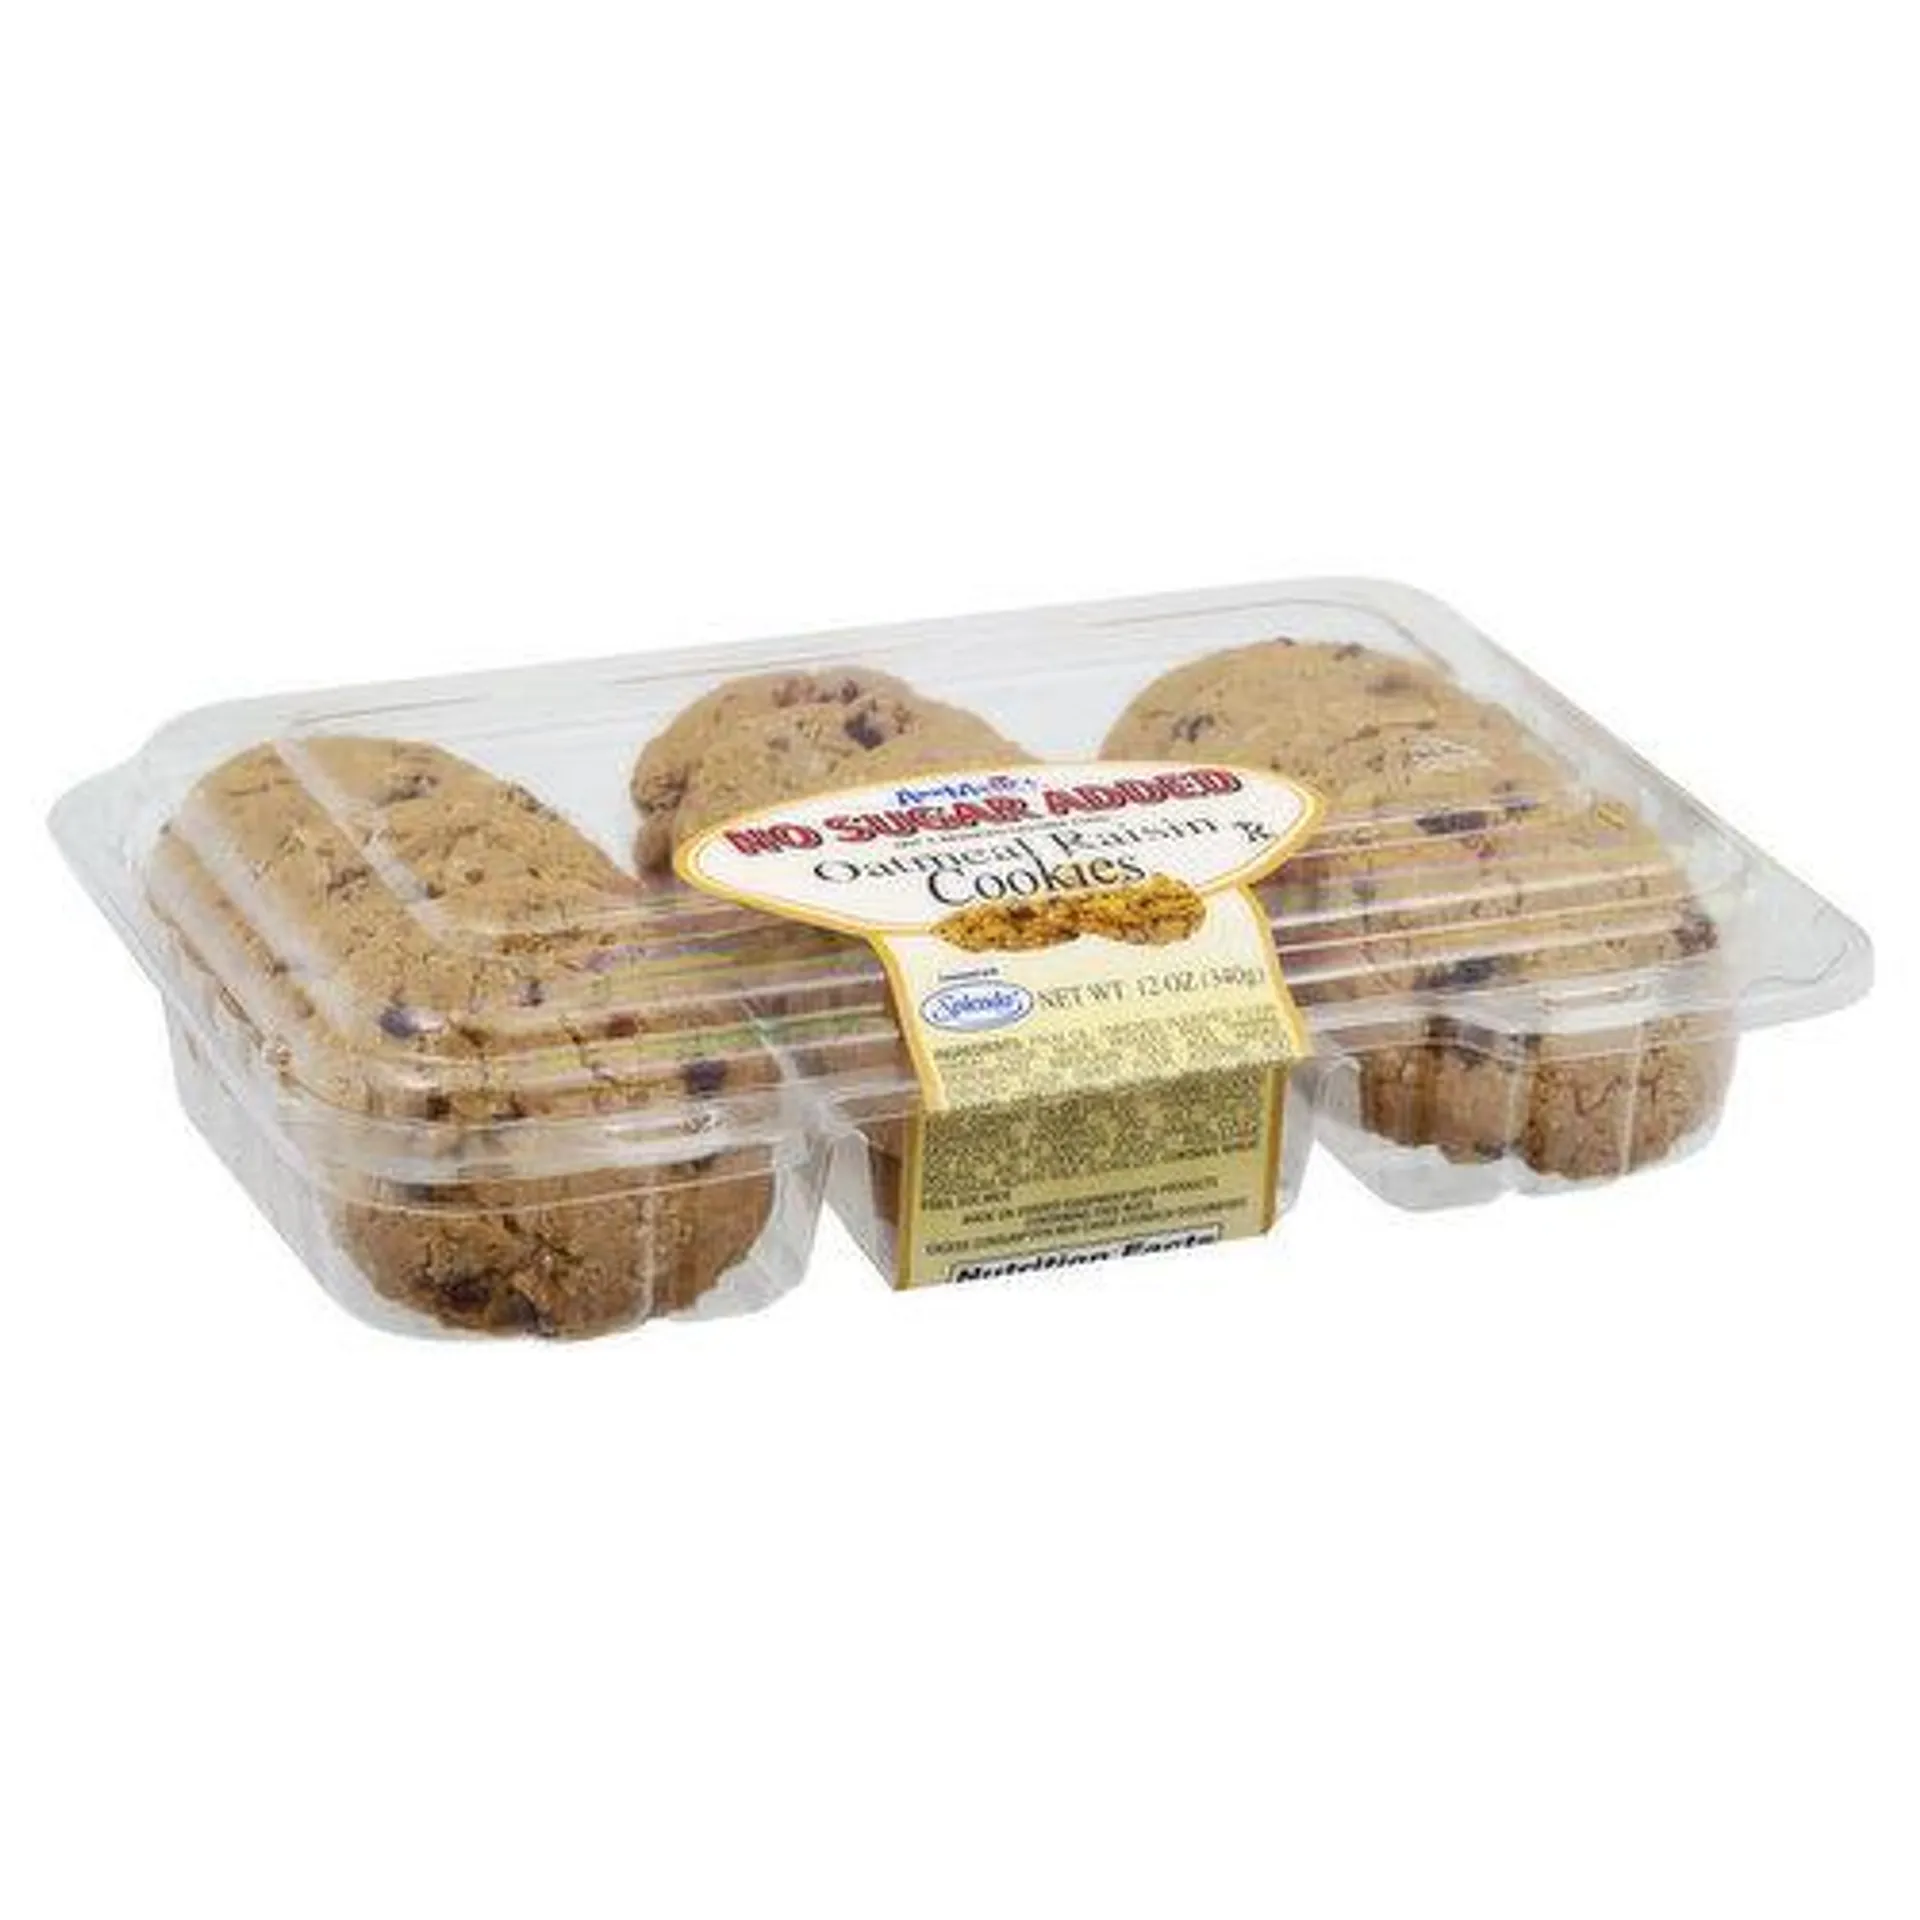 Ann Marie's Cookies, No Sugar Added, Oatmeal Raisin - 12 Ounce